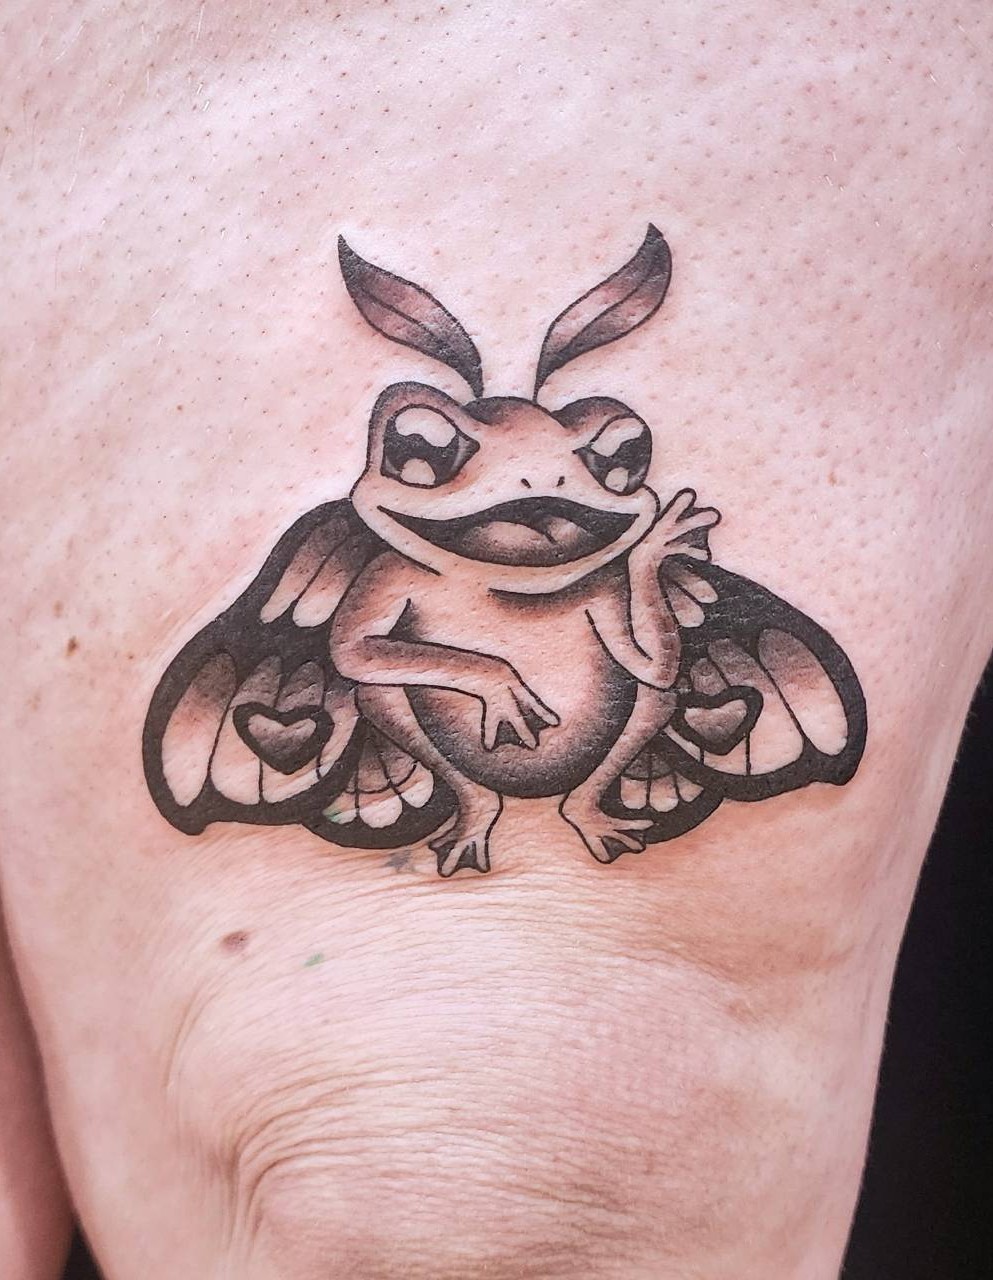 Butterfly frog<br />
Jill Rosati